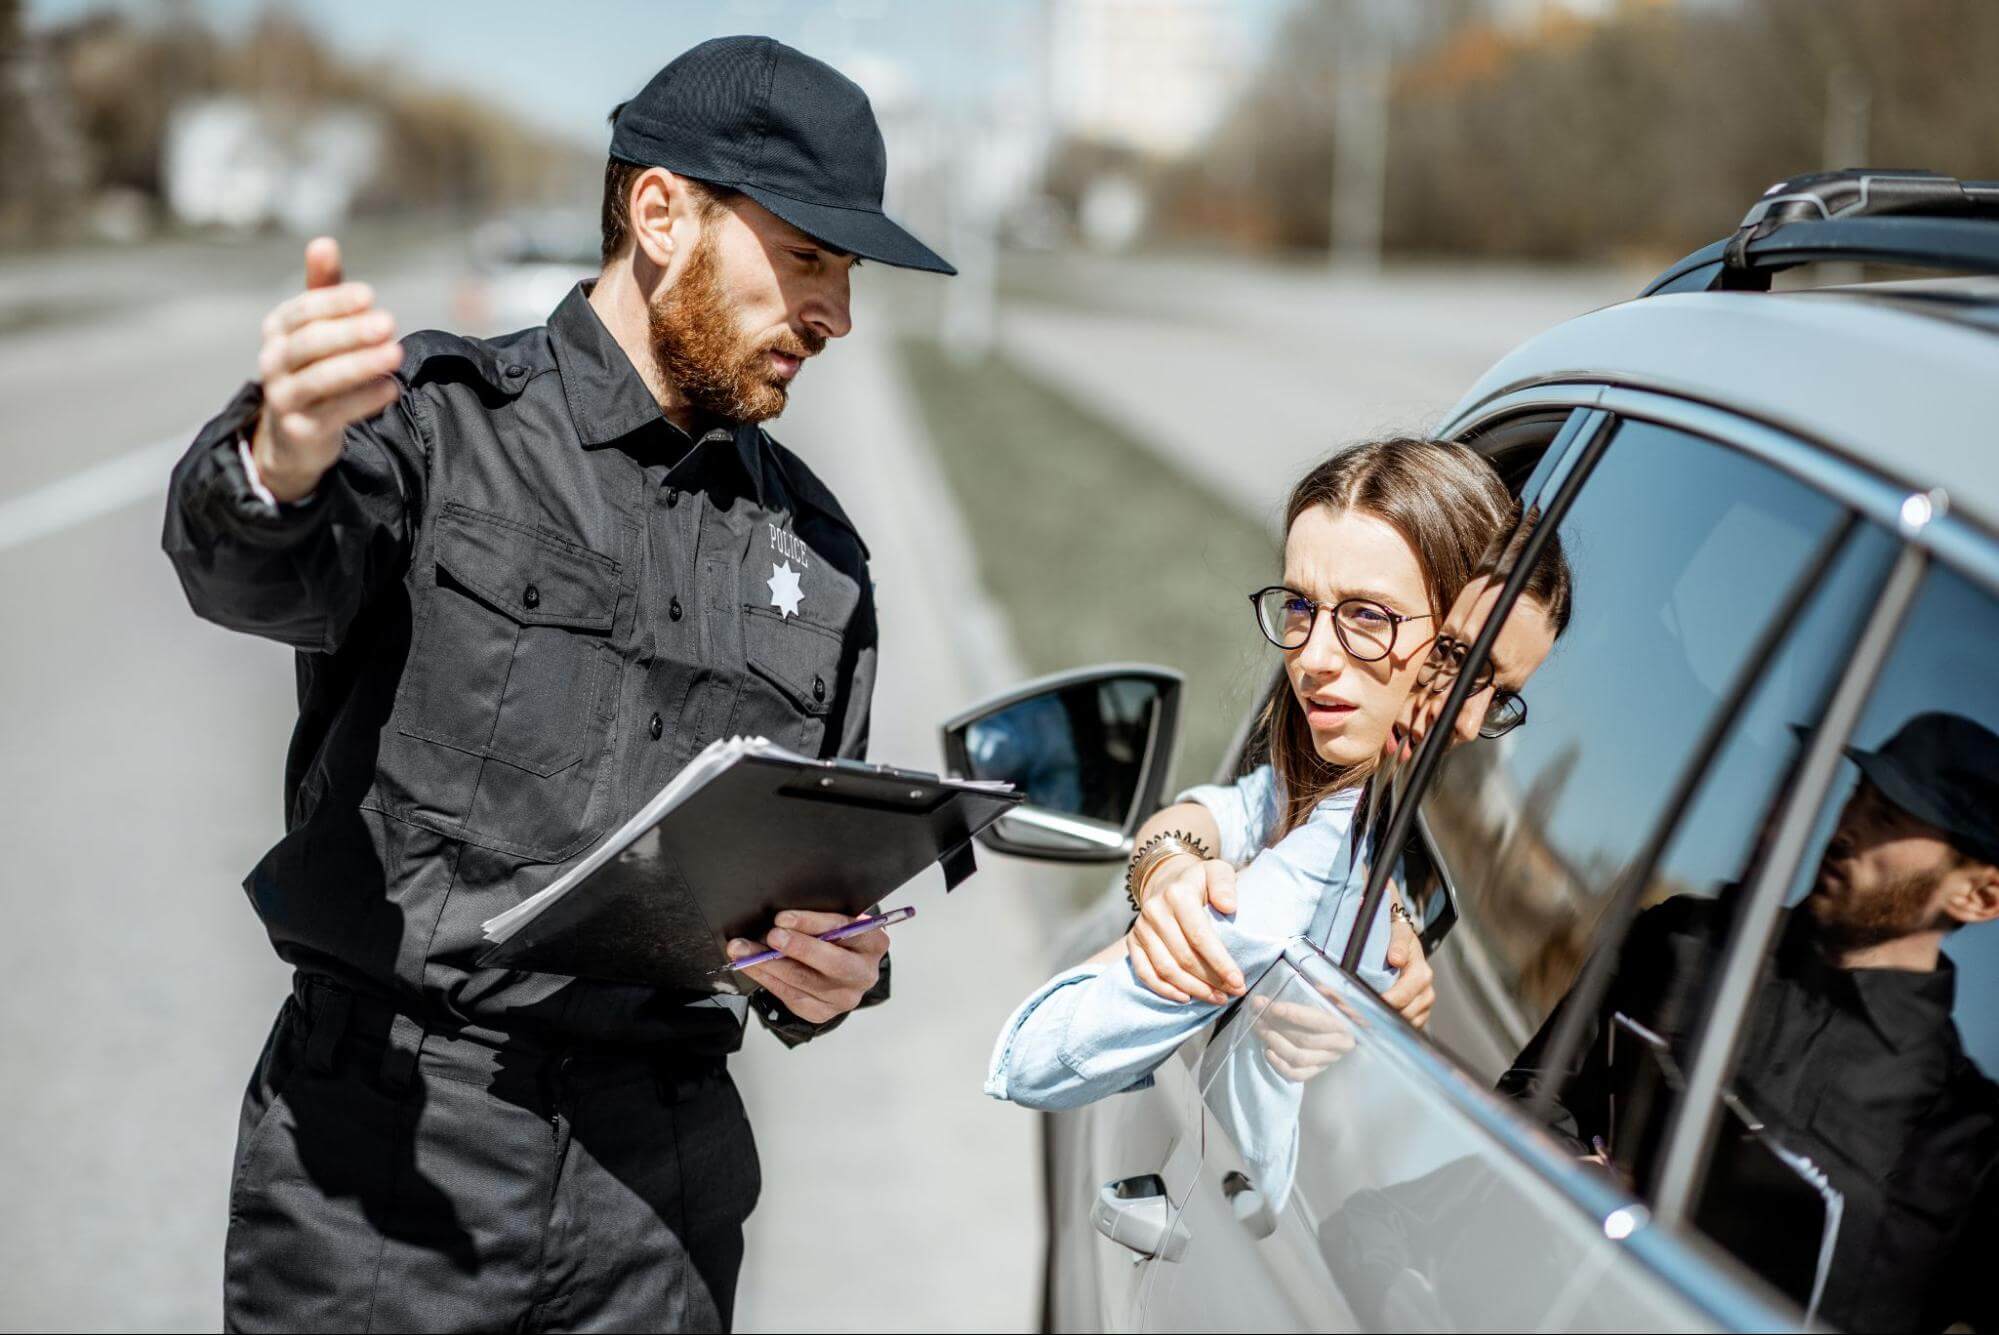 uma mulher está no lugar de motorista de um veículo, com a cabeça do lado de fora, enquanto conversa com um guarda de trânsito que tem uma caderneta em suas mãos e faz gestos com a mão, indicando direções